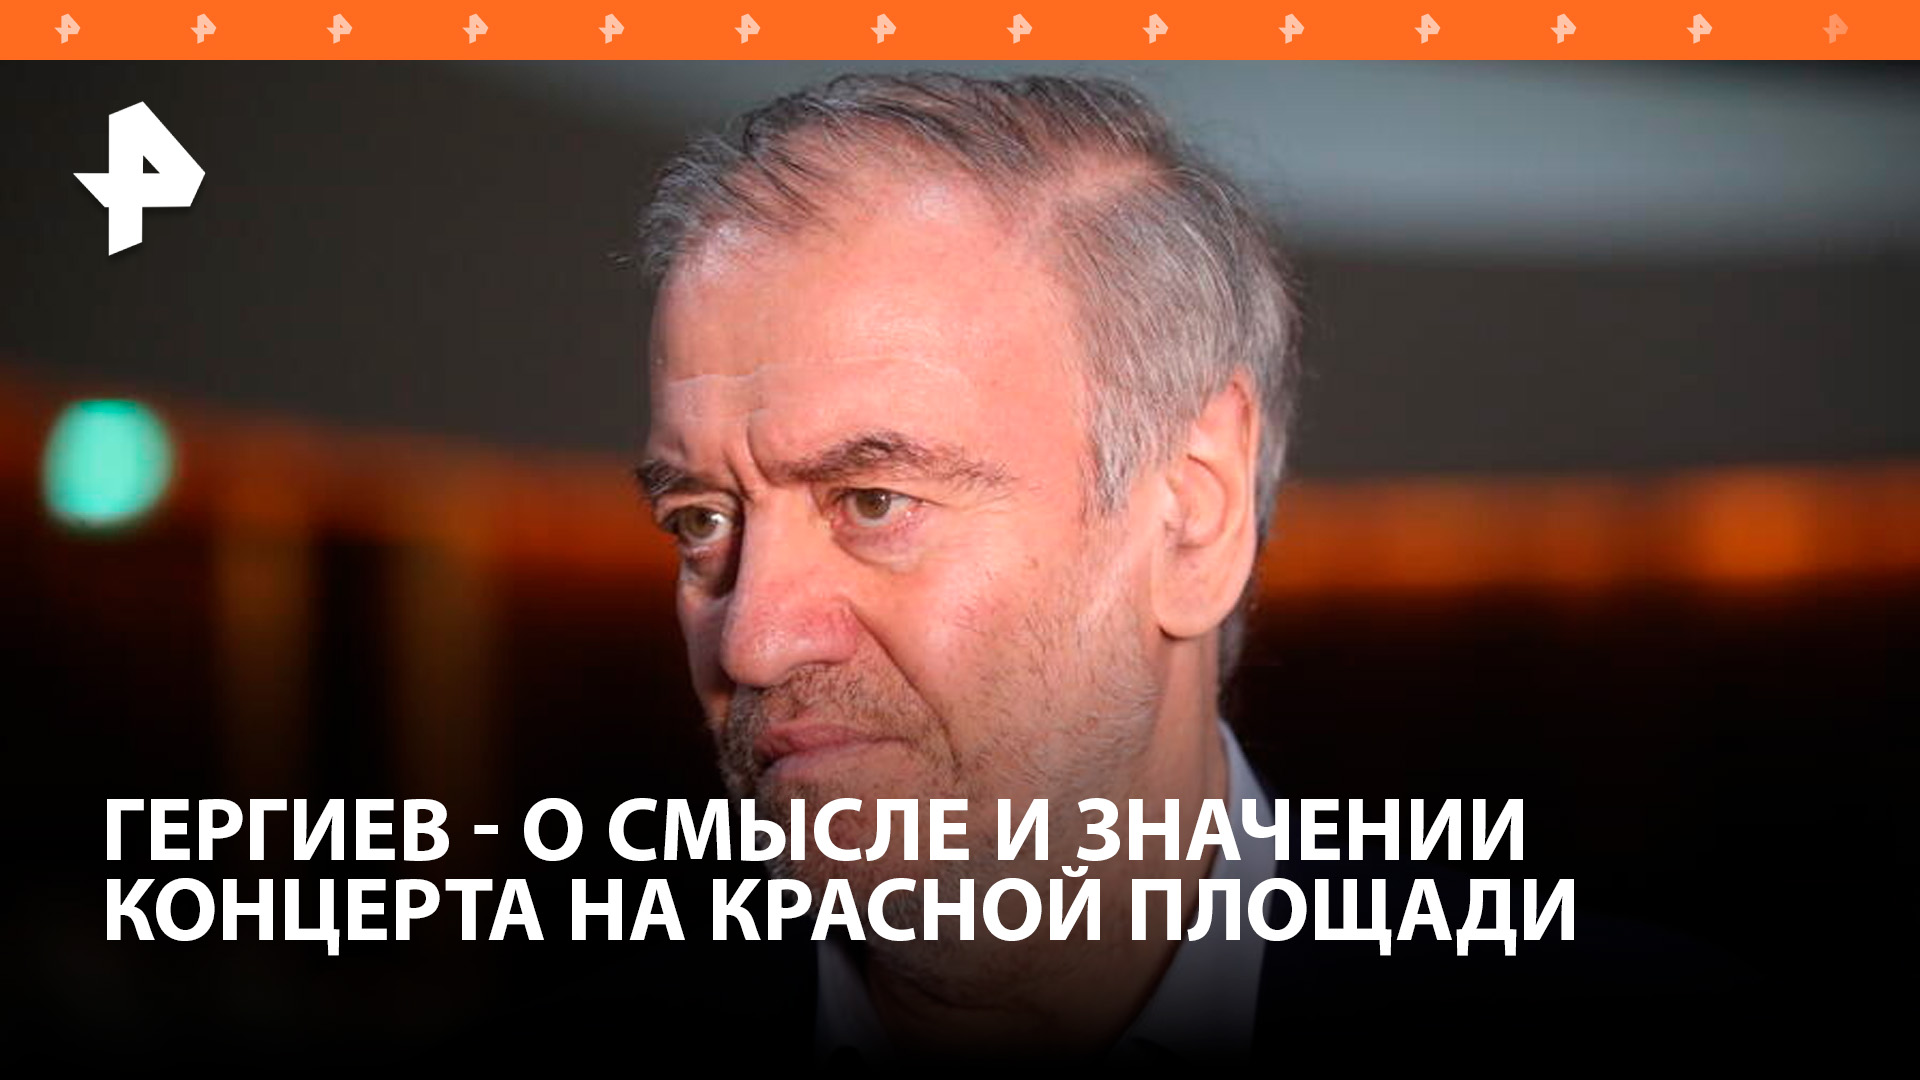 Дирижер Валерий Гергиев рассказал о концерте на Красной площади в честь Дня славянской письменности